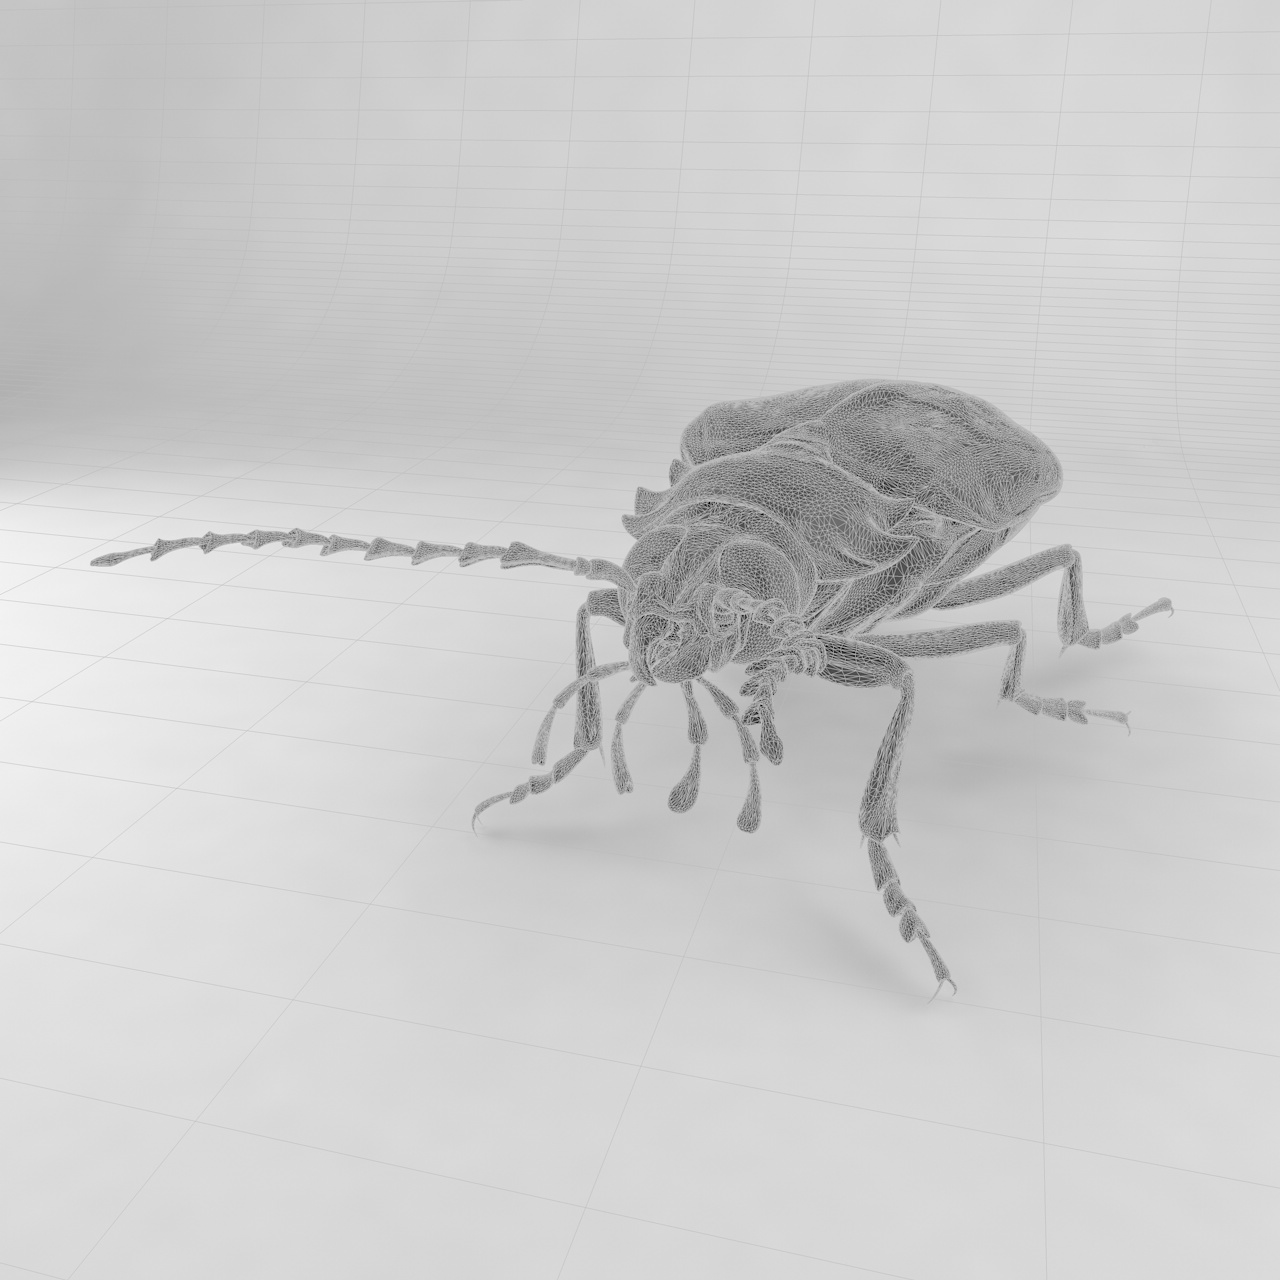 Prionus insularis insularis insect beetles 3d model